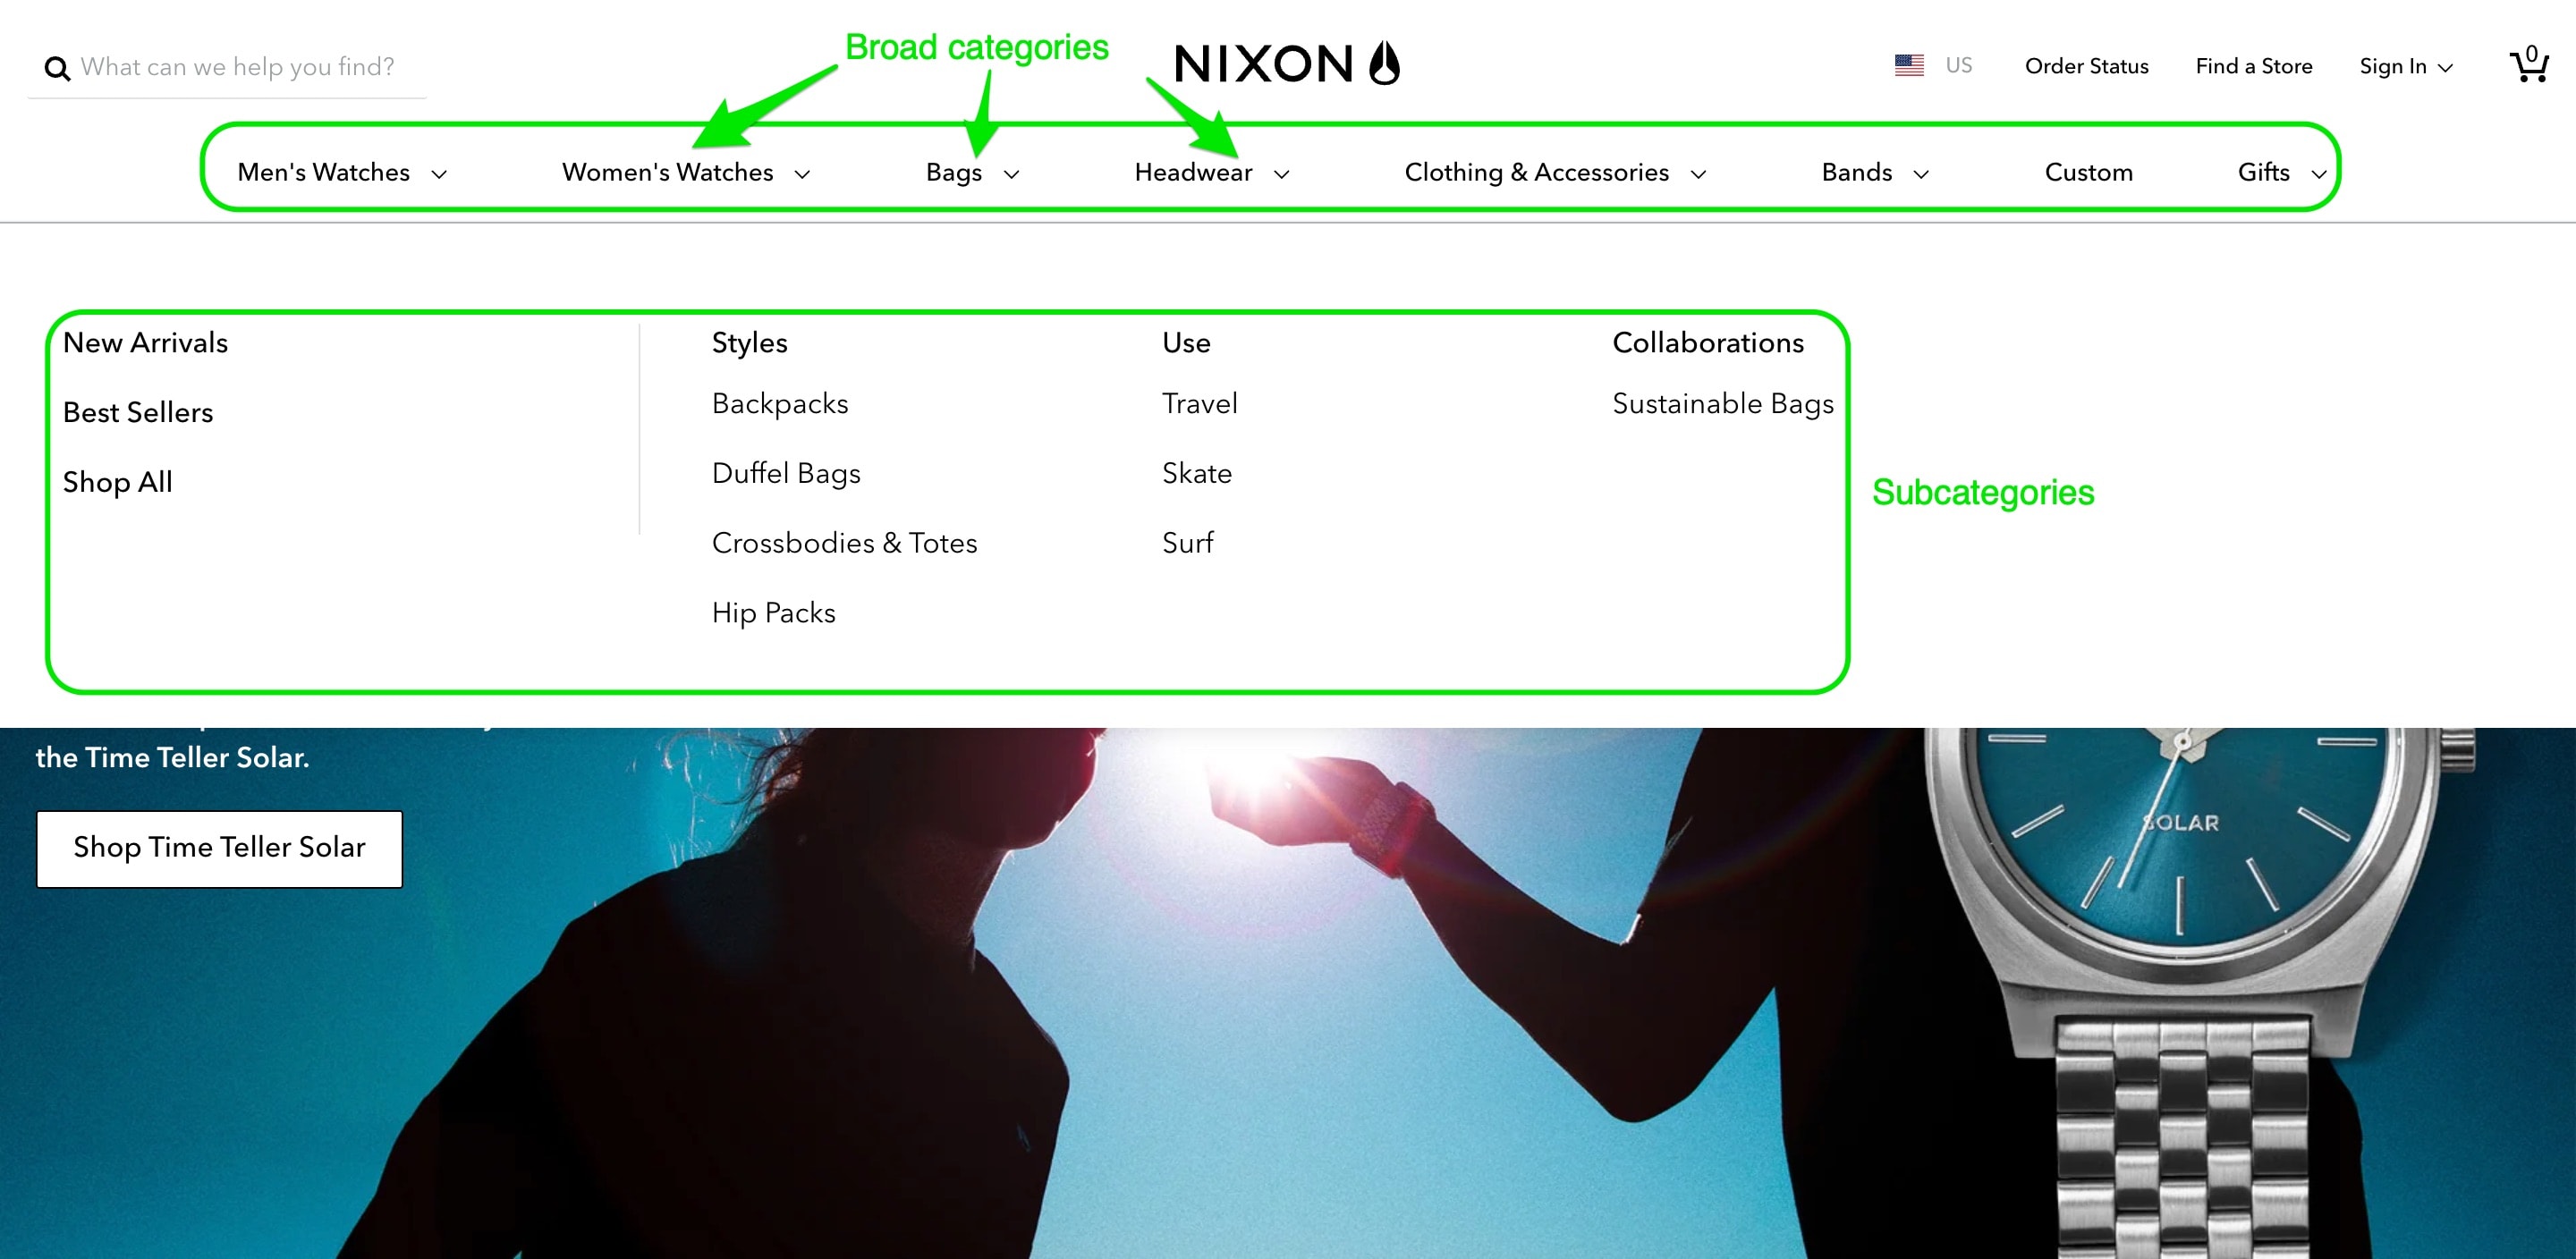 Nixon website navigation example